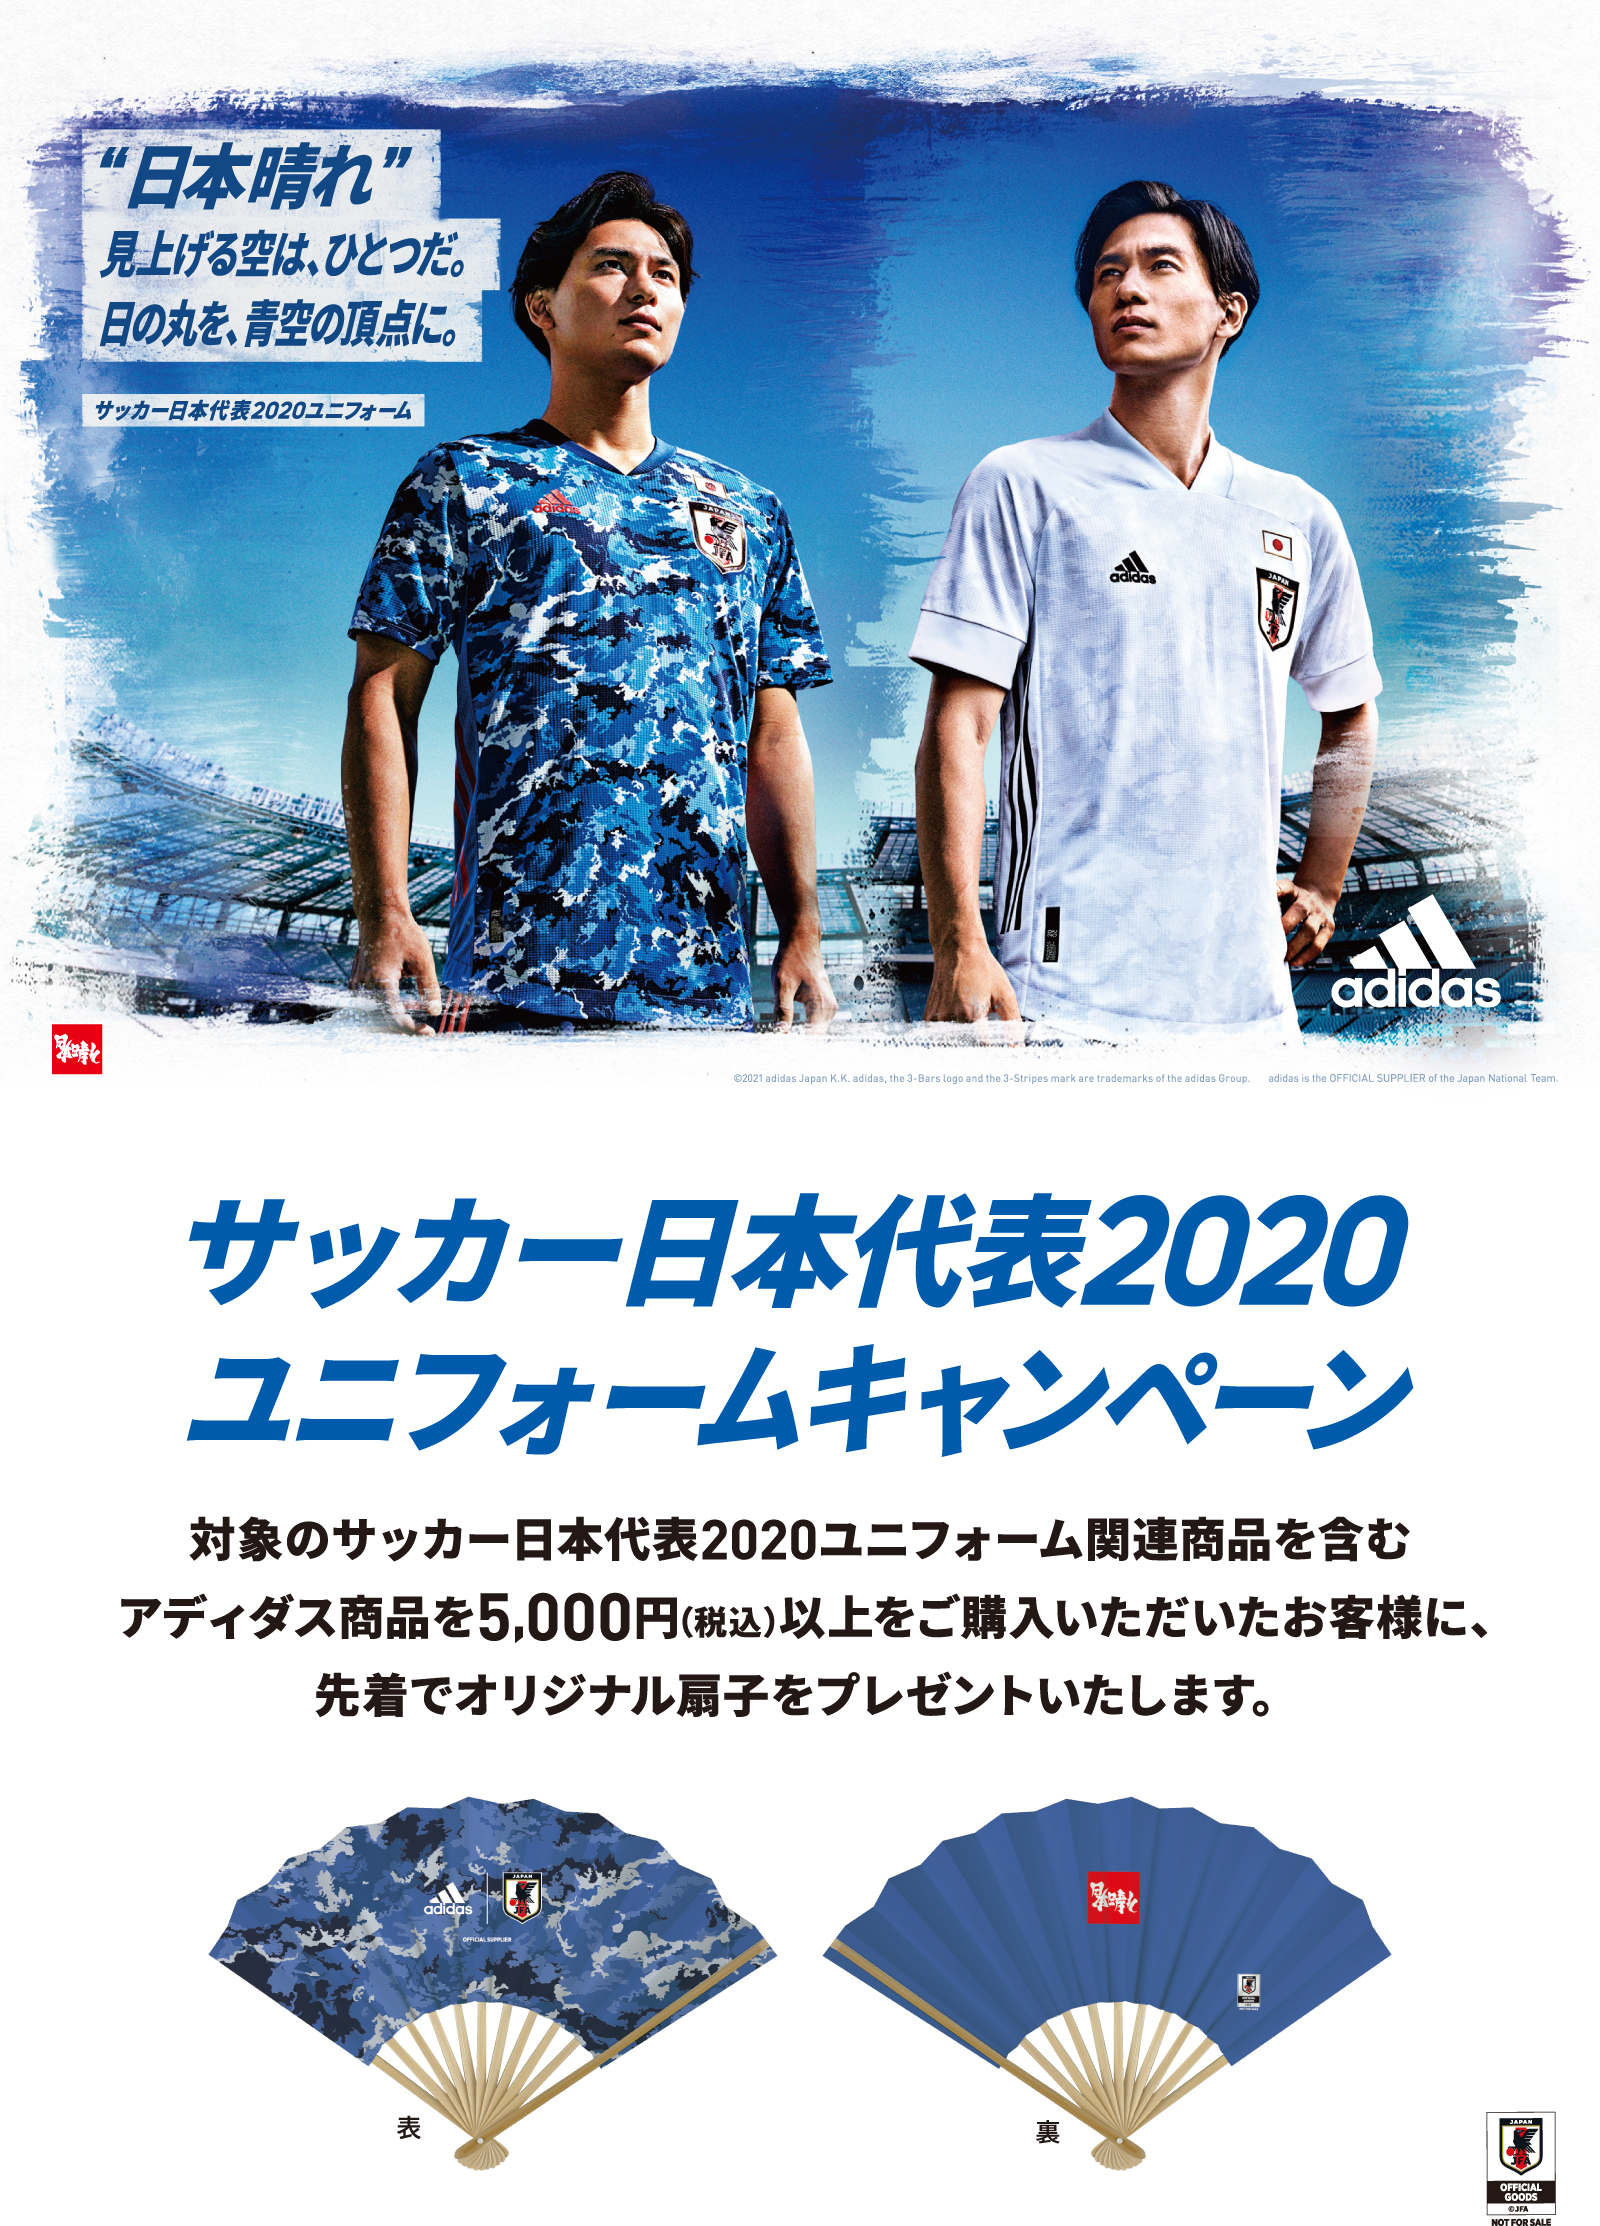 アディダス サッカー日本代表 ユニフォーム Kishispo Kemari87 公式通販サイト